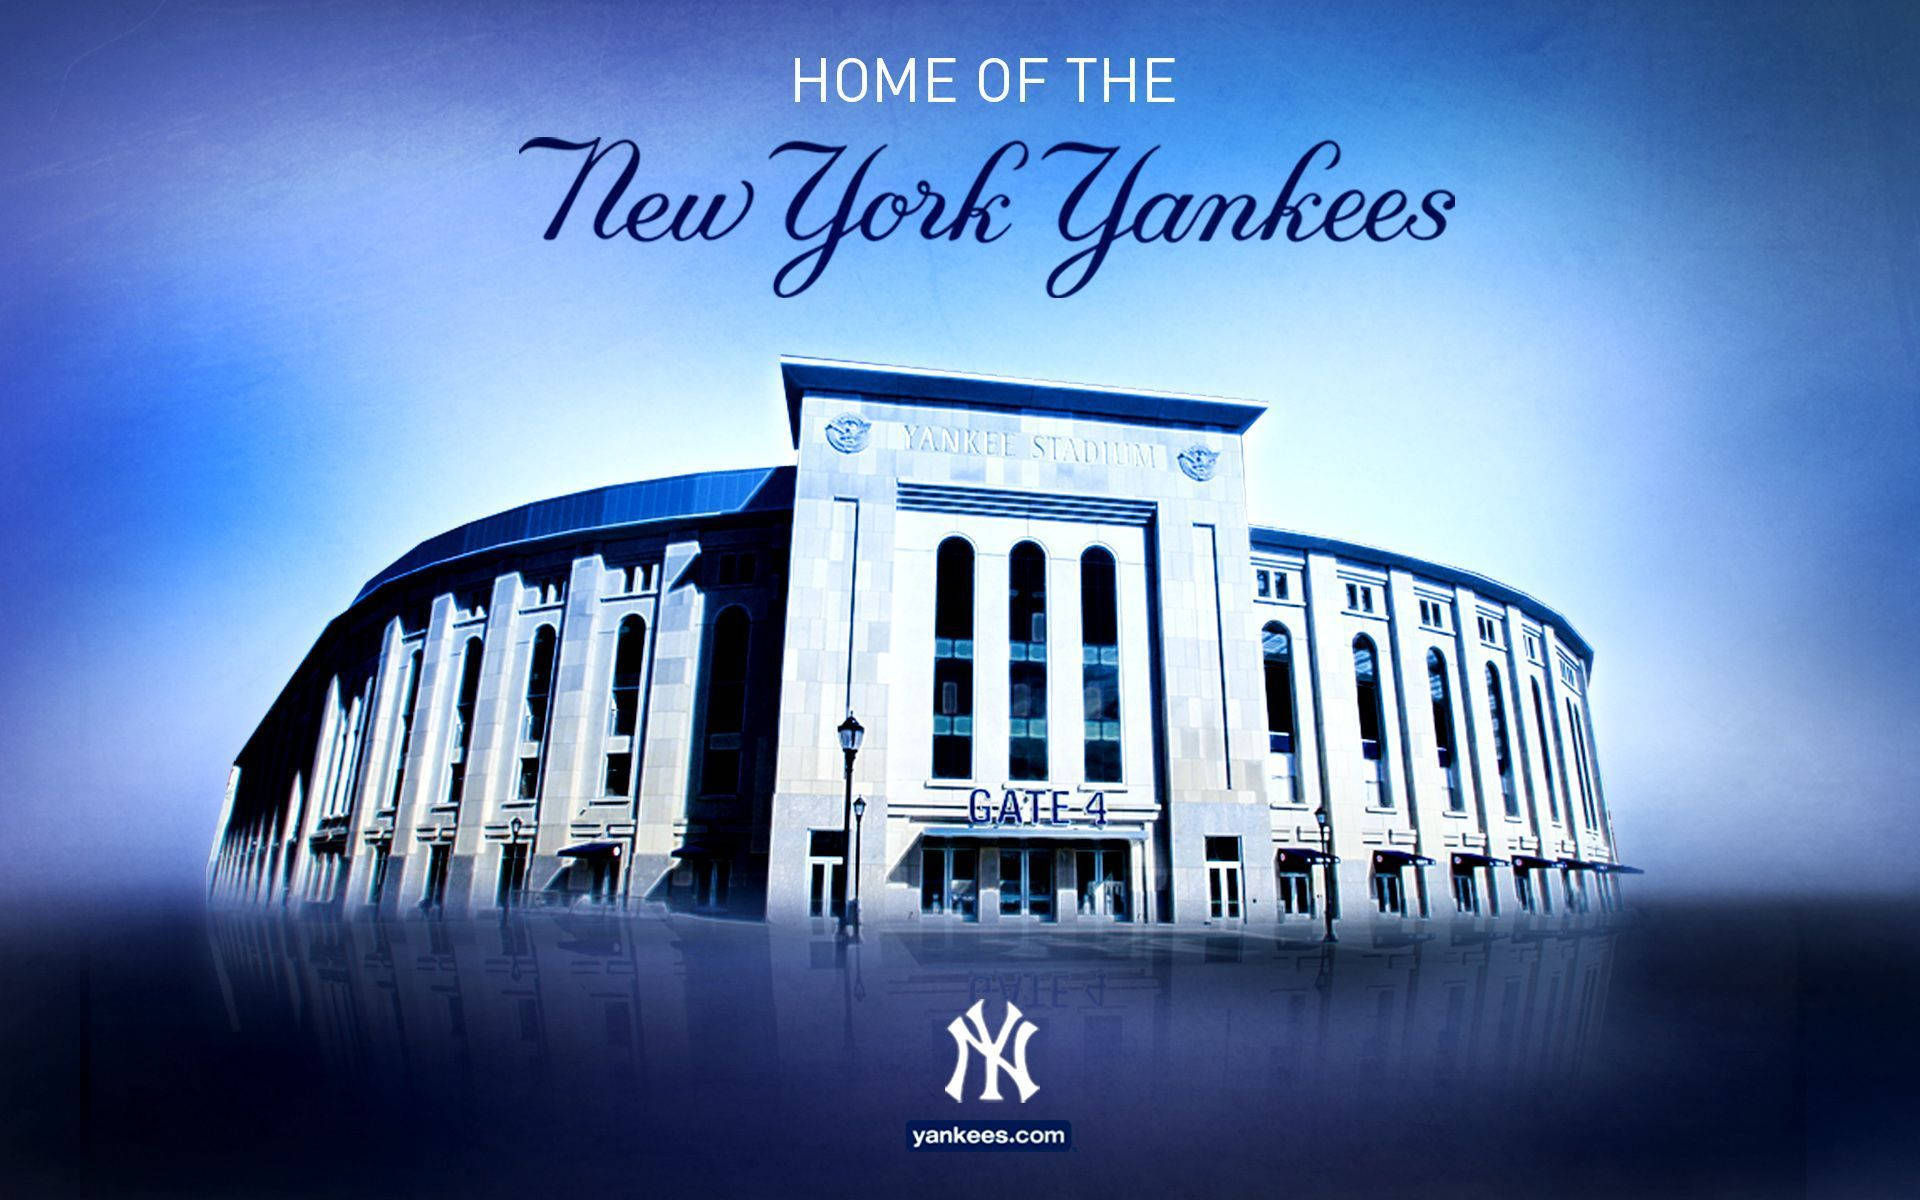 New York Yankees Iphone Wallpaper